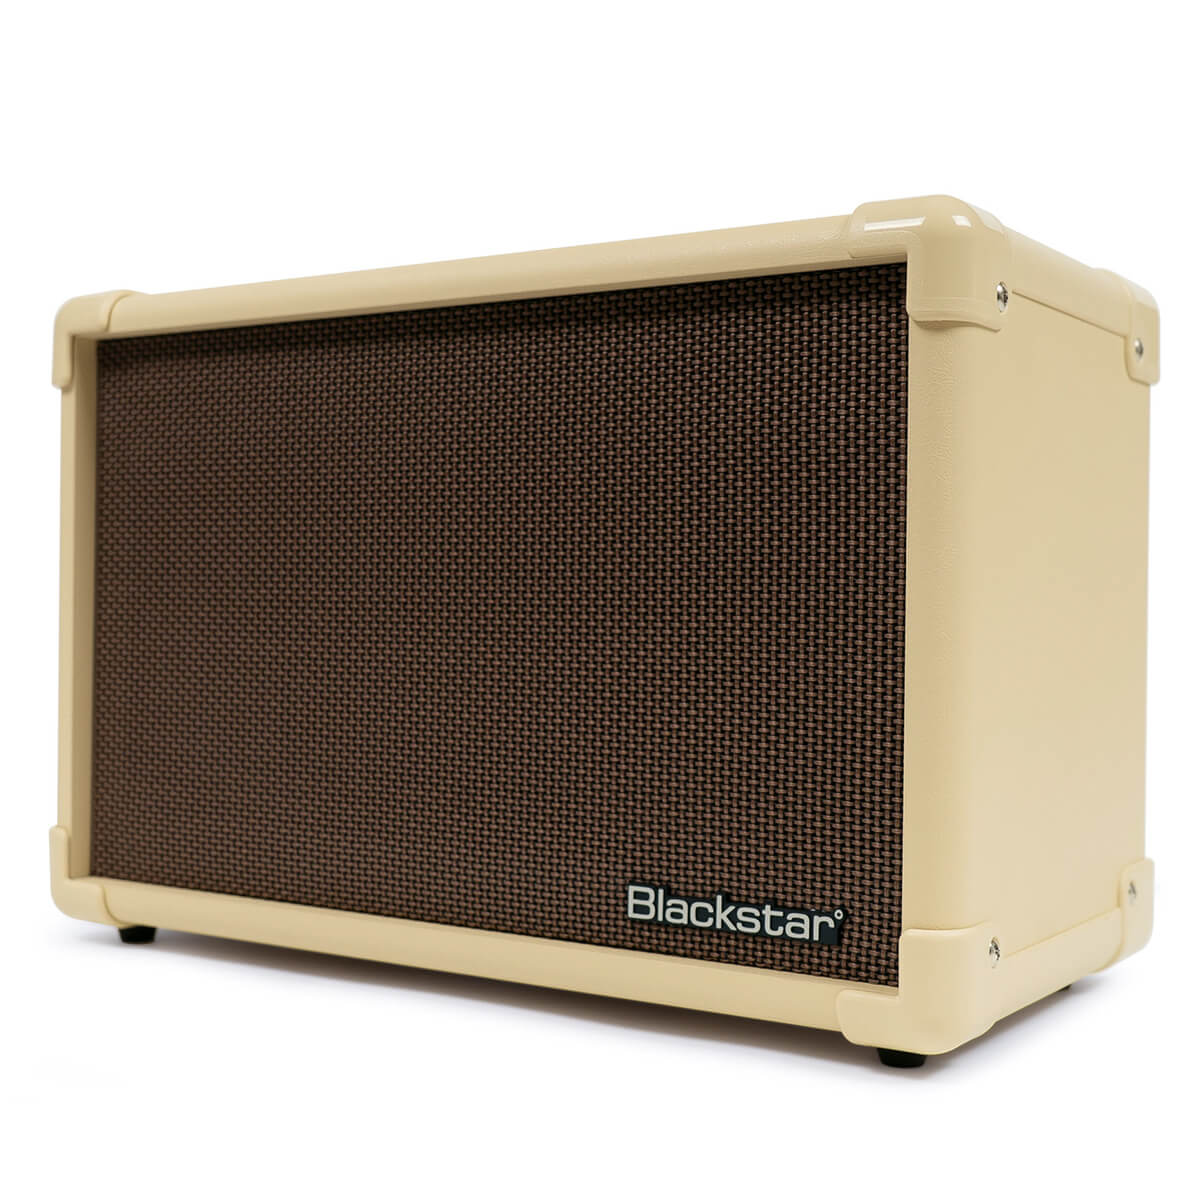 Blackstar Acoustic Core 30 guitar amplifier